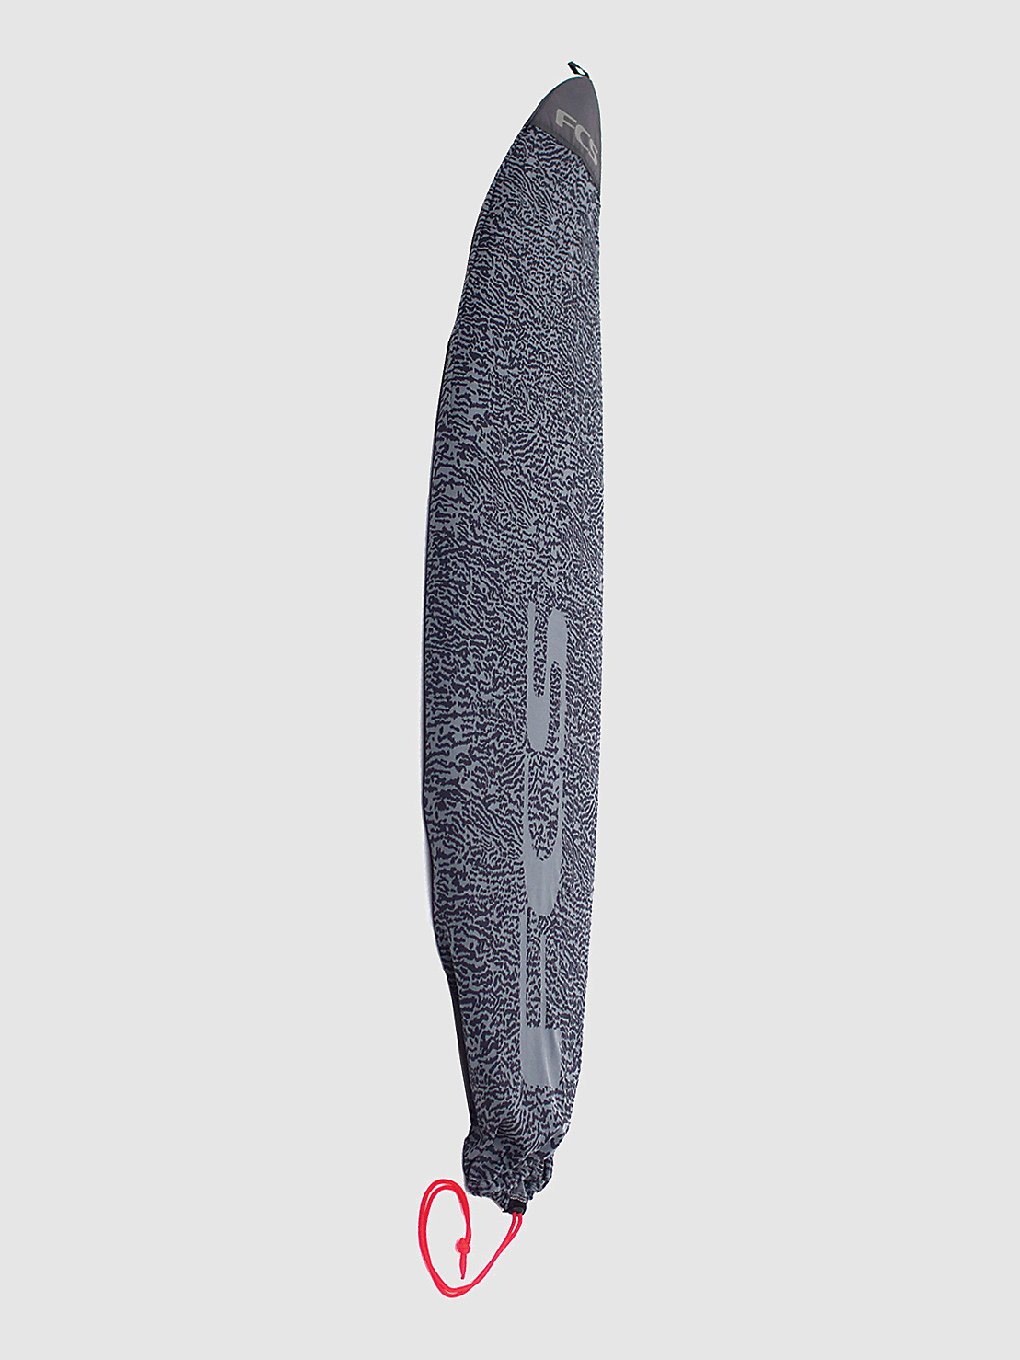 FCS Stretch All Purpose 6'0 Surfboard-Tasche carbon kaufen